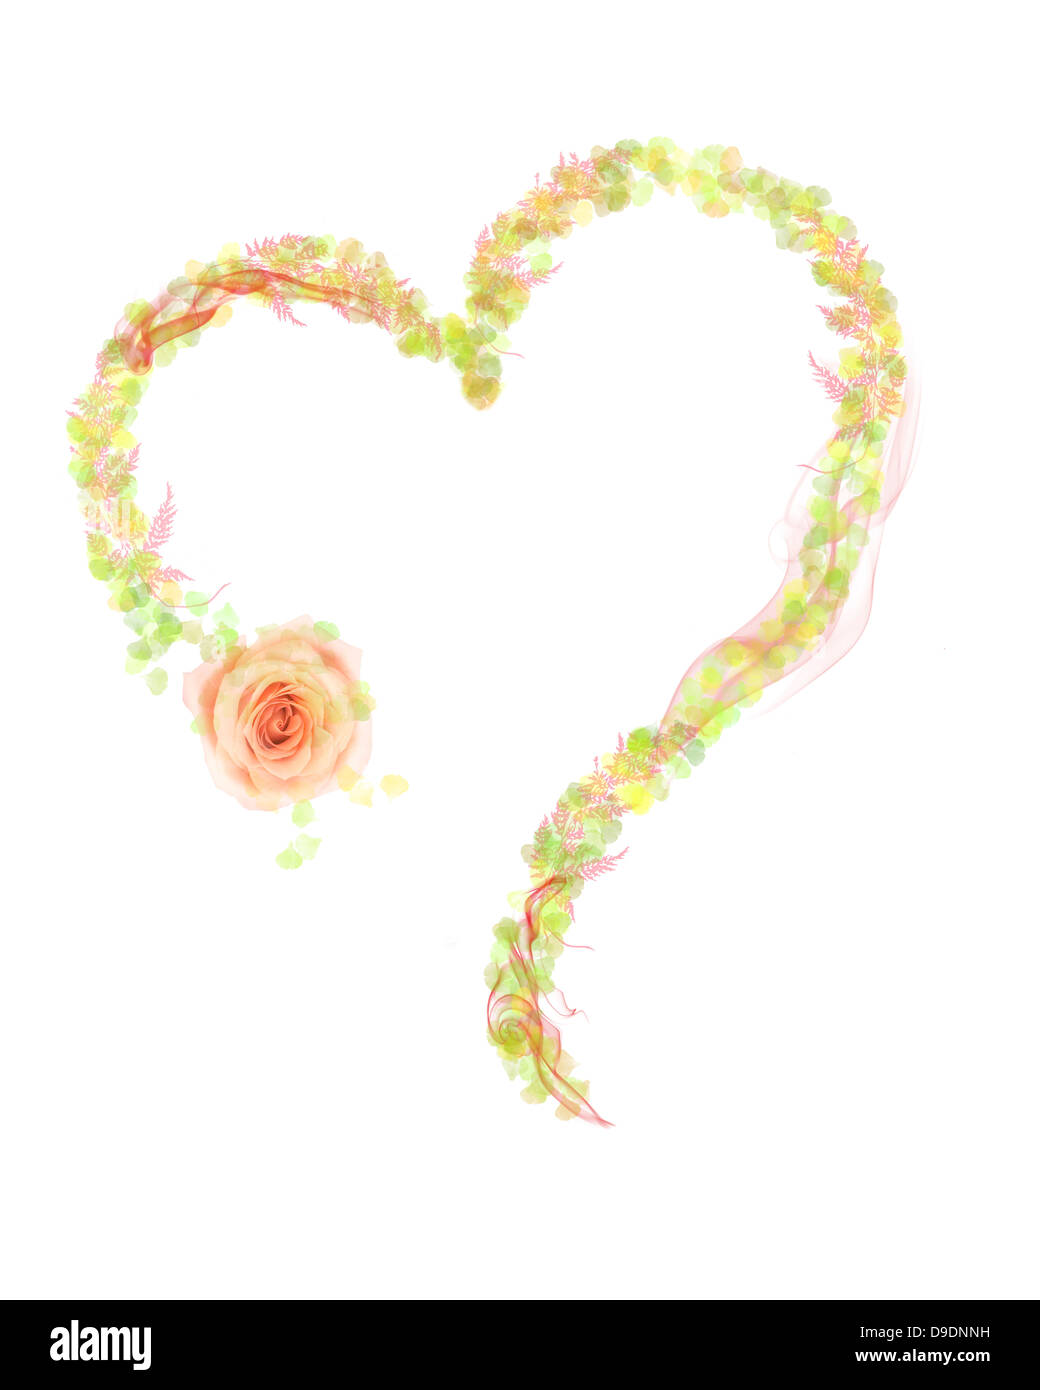 Forme de coeur fait avec des feuilles et fleurs Banque D'Images